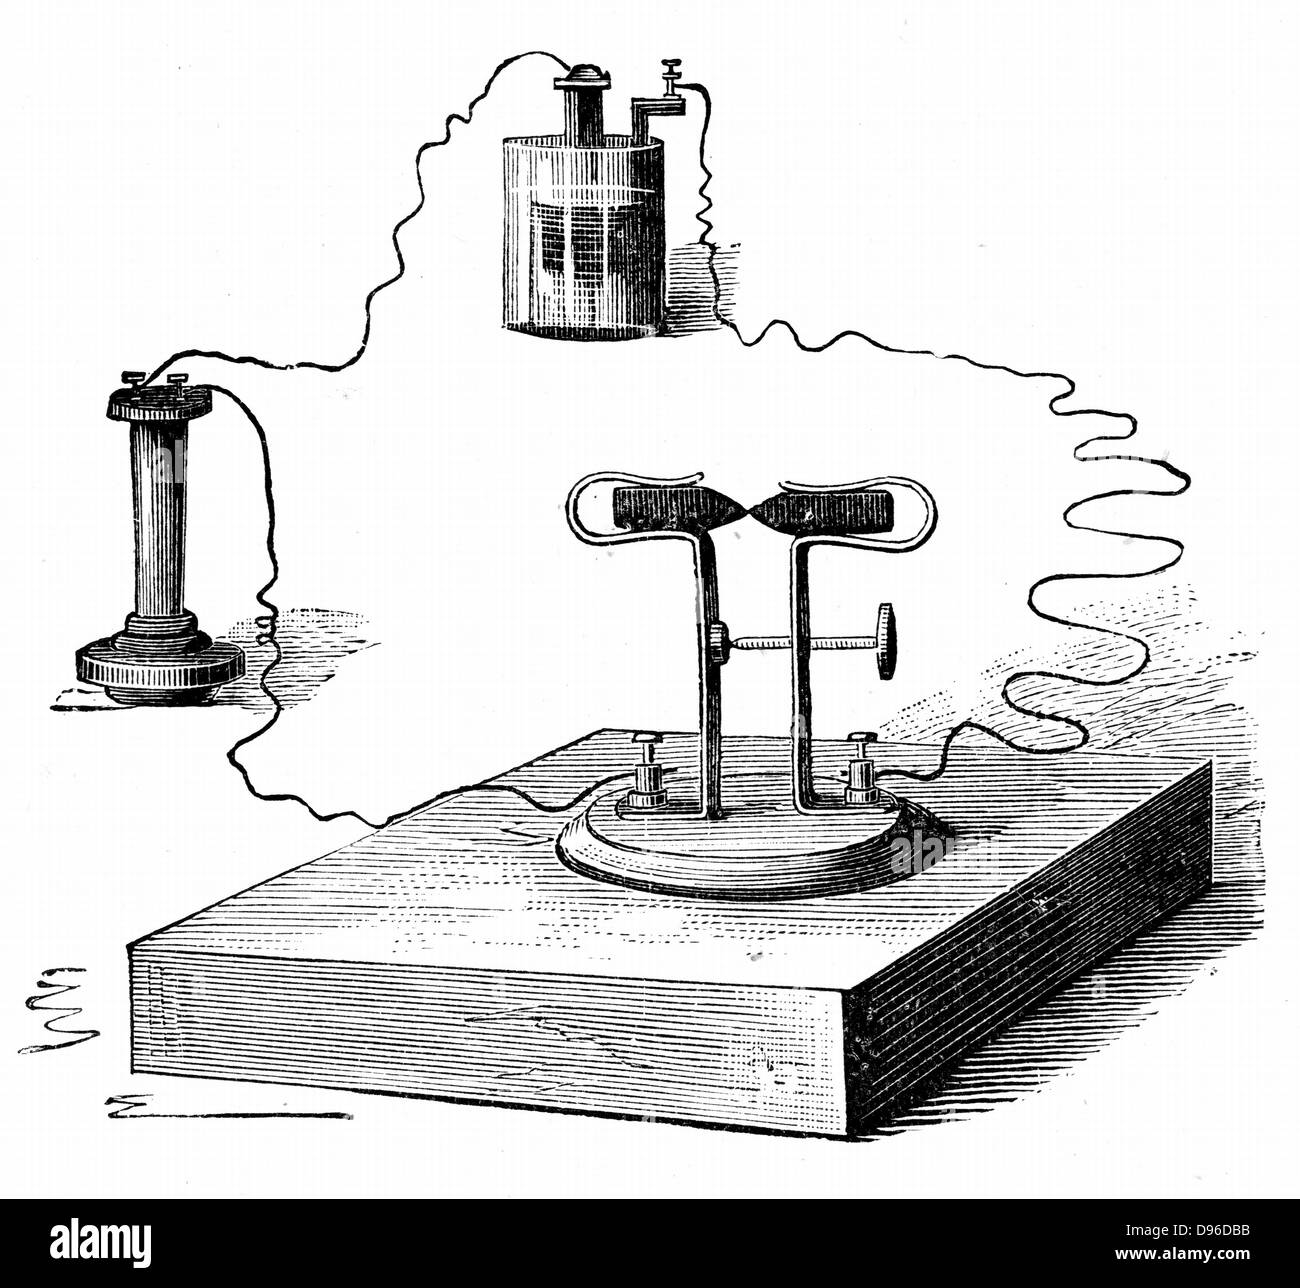 Co2-Mikrofon, im Jahre 1878 durch David Edward Hughes (1831-1900), englischer Erfinder erfunden. Die von R. Wormell' Strom in den Dienst des Menschen "London, 1890. Gravur Stockfoto